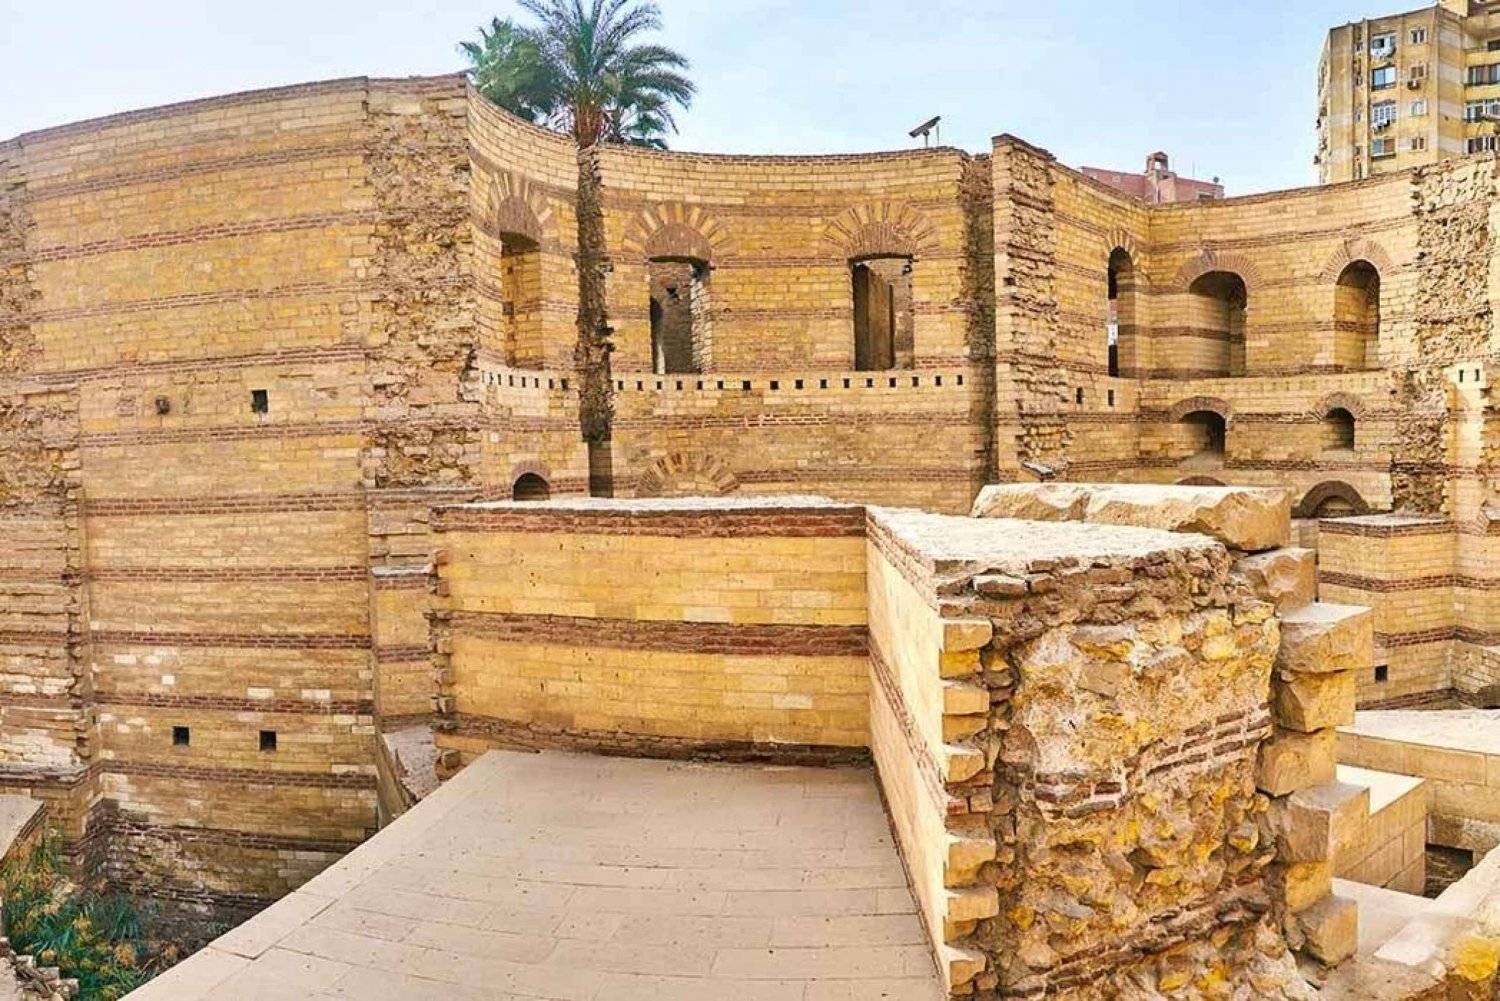 Cairo: Fort of Babylon